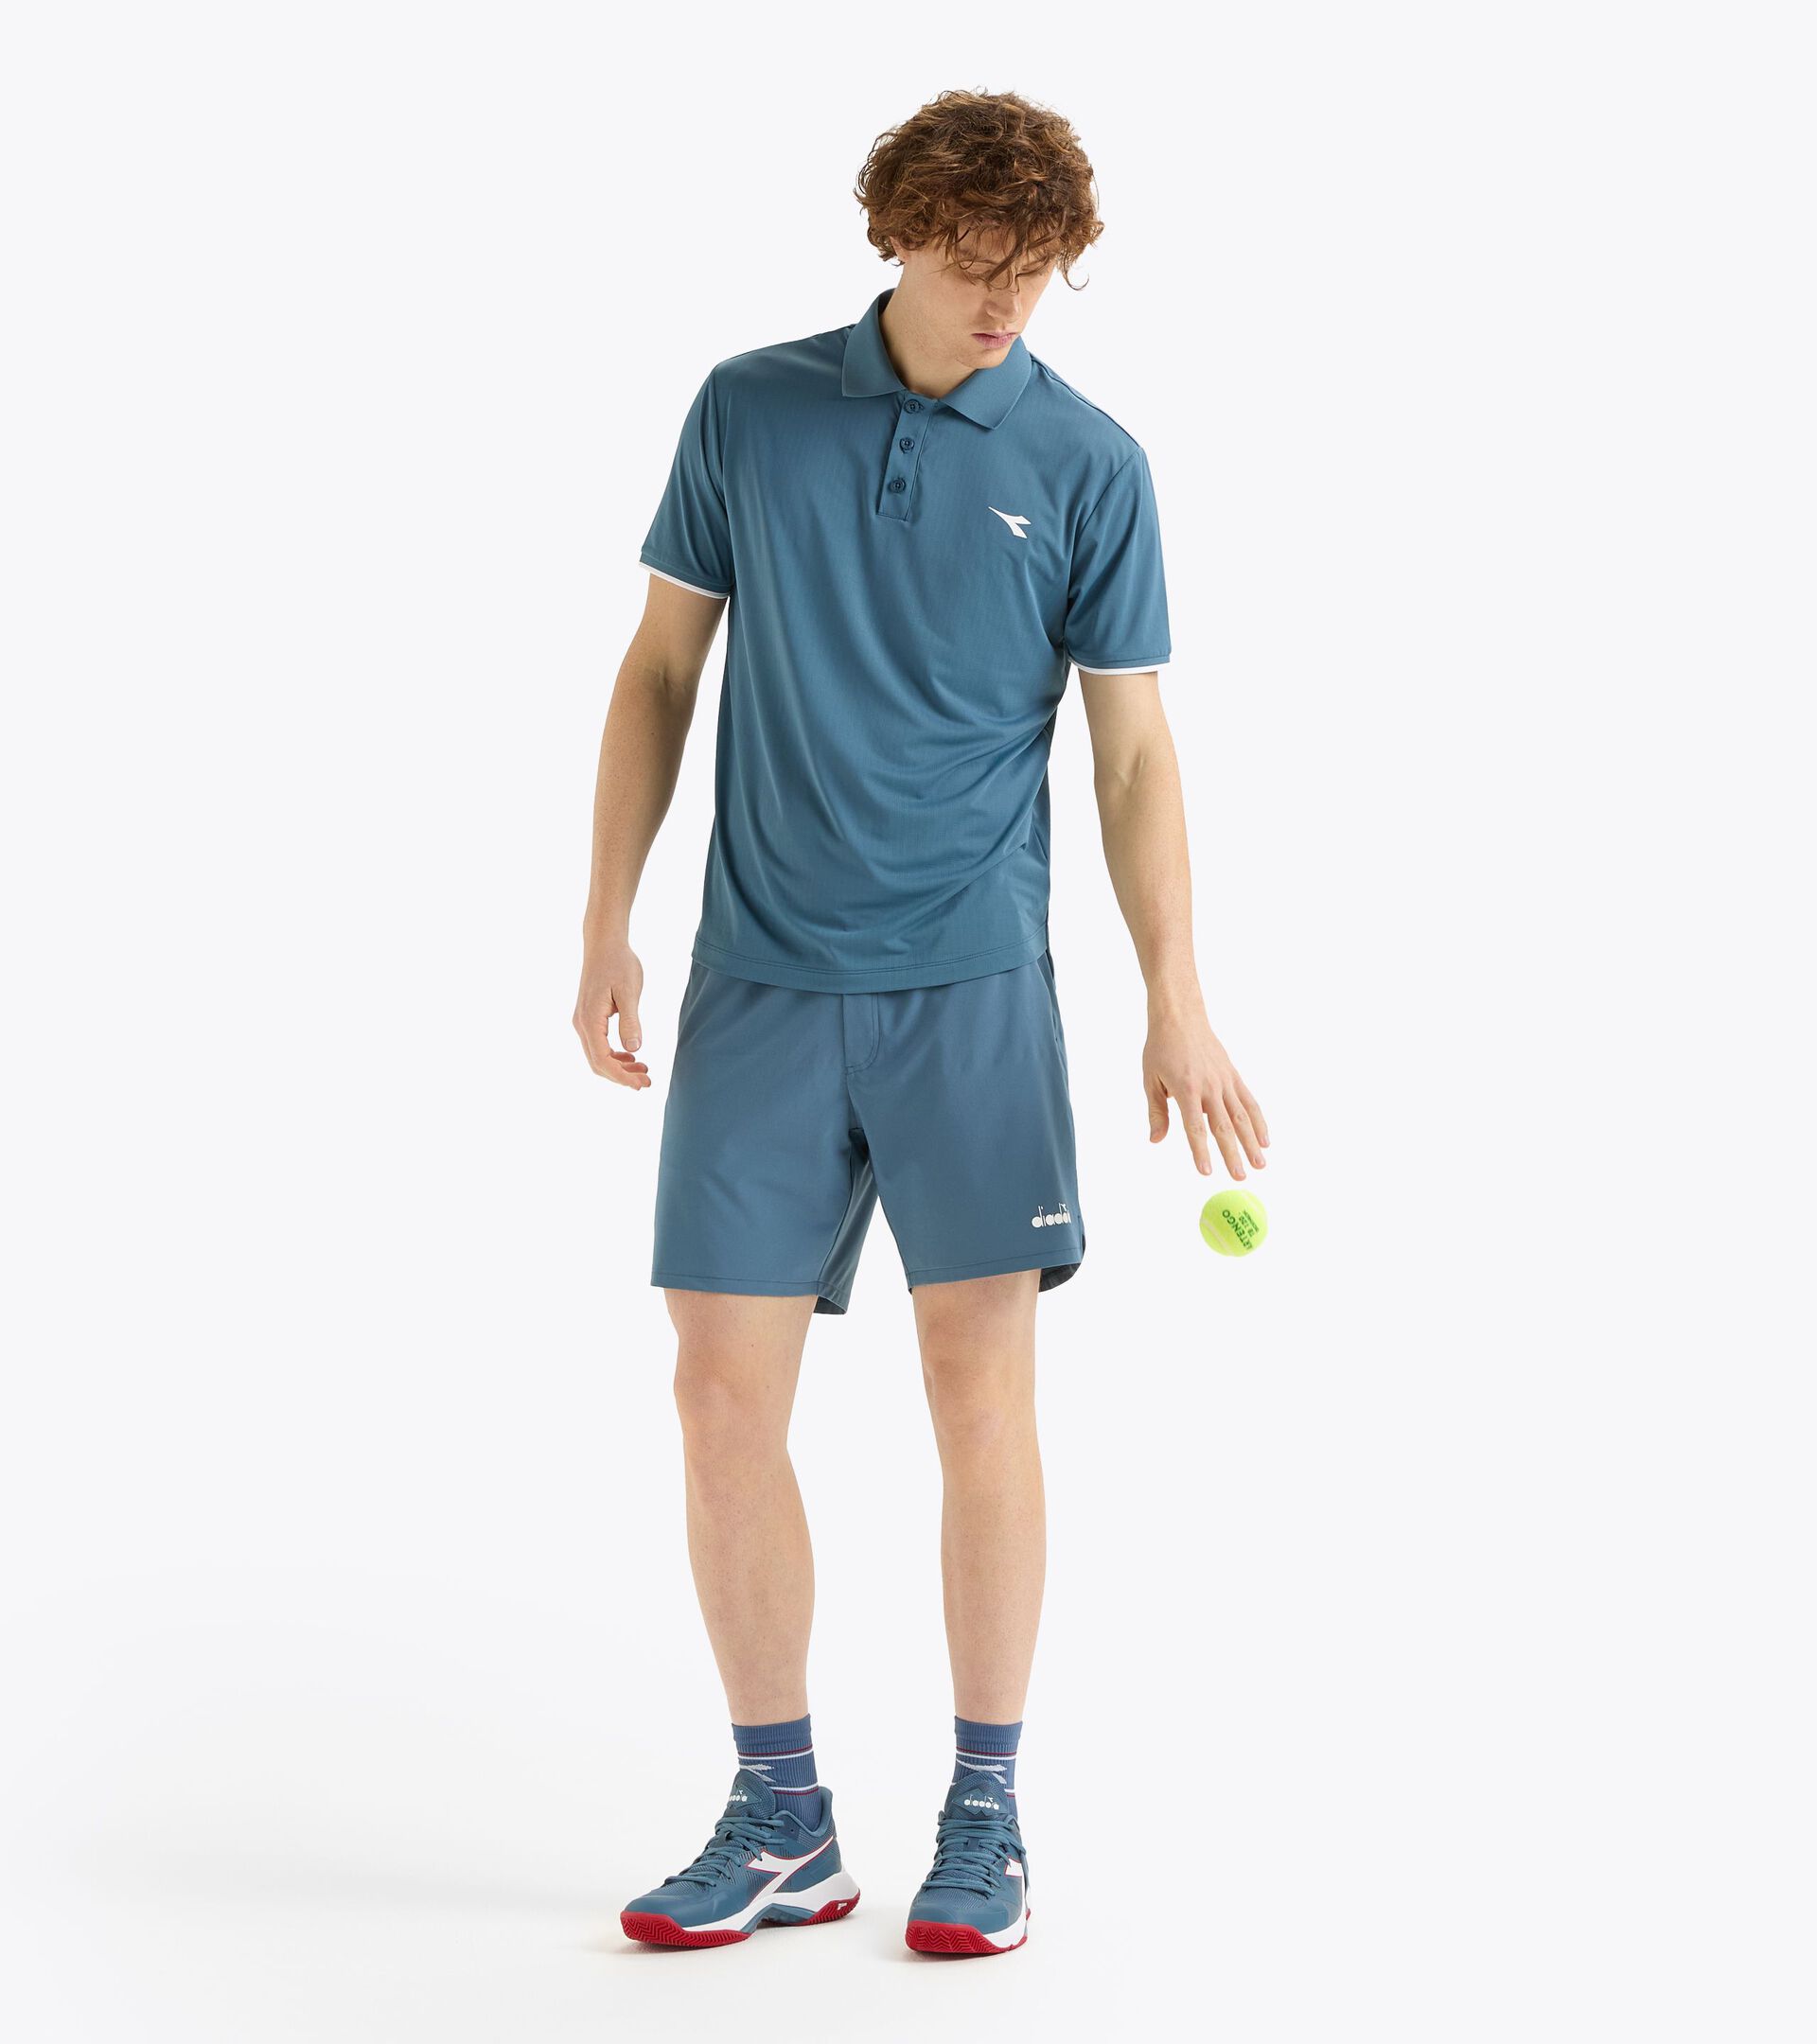 Pantalones cortos de tenis 7’’ - Hombre
 SHORTS ICON 7" OCEANVIEW - Diadora